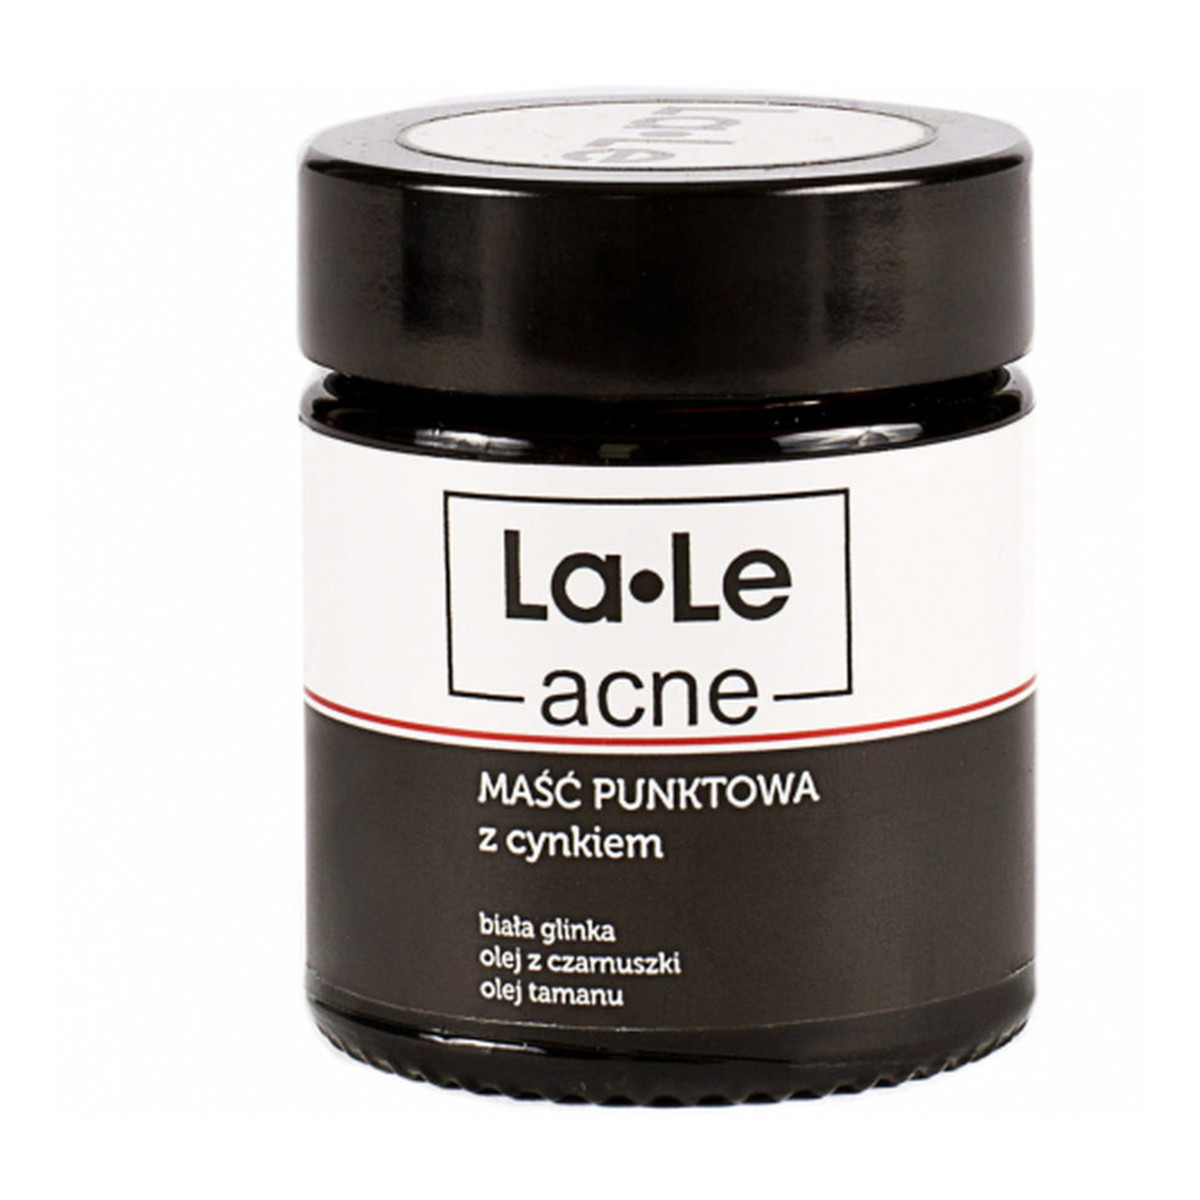 La-Le acne Maść punktowa z cynkiem 30ml